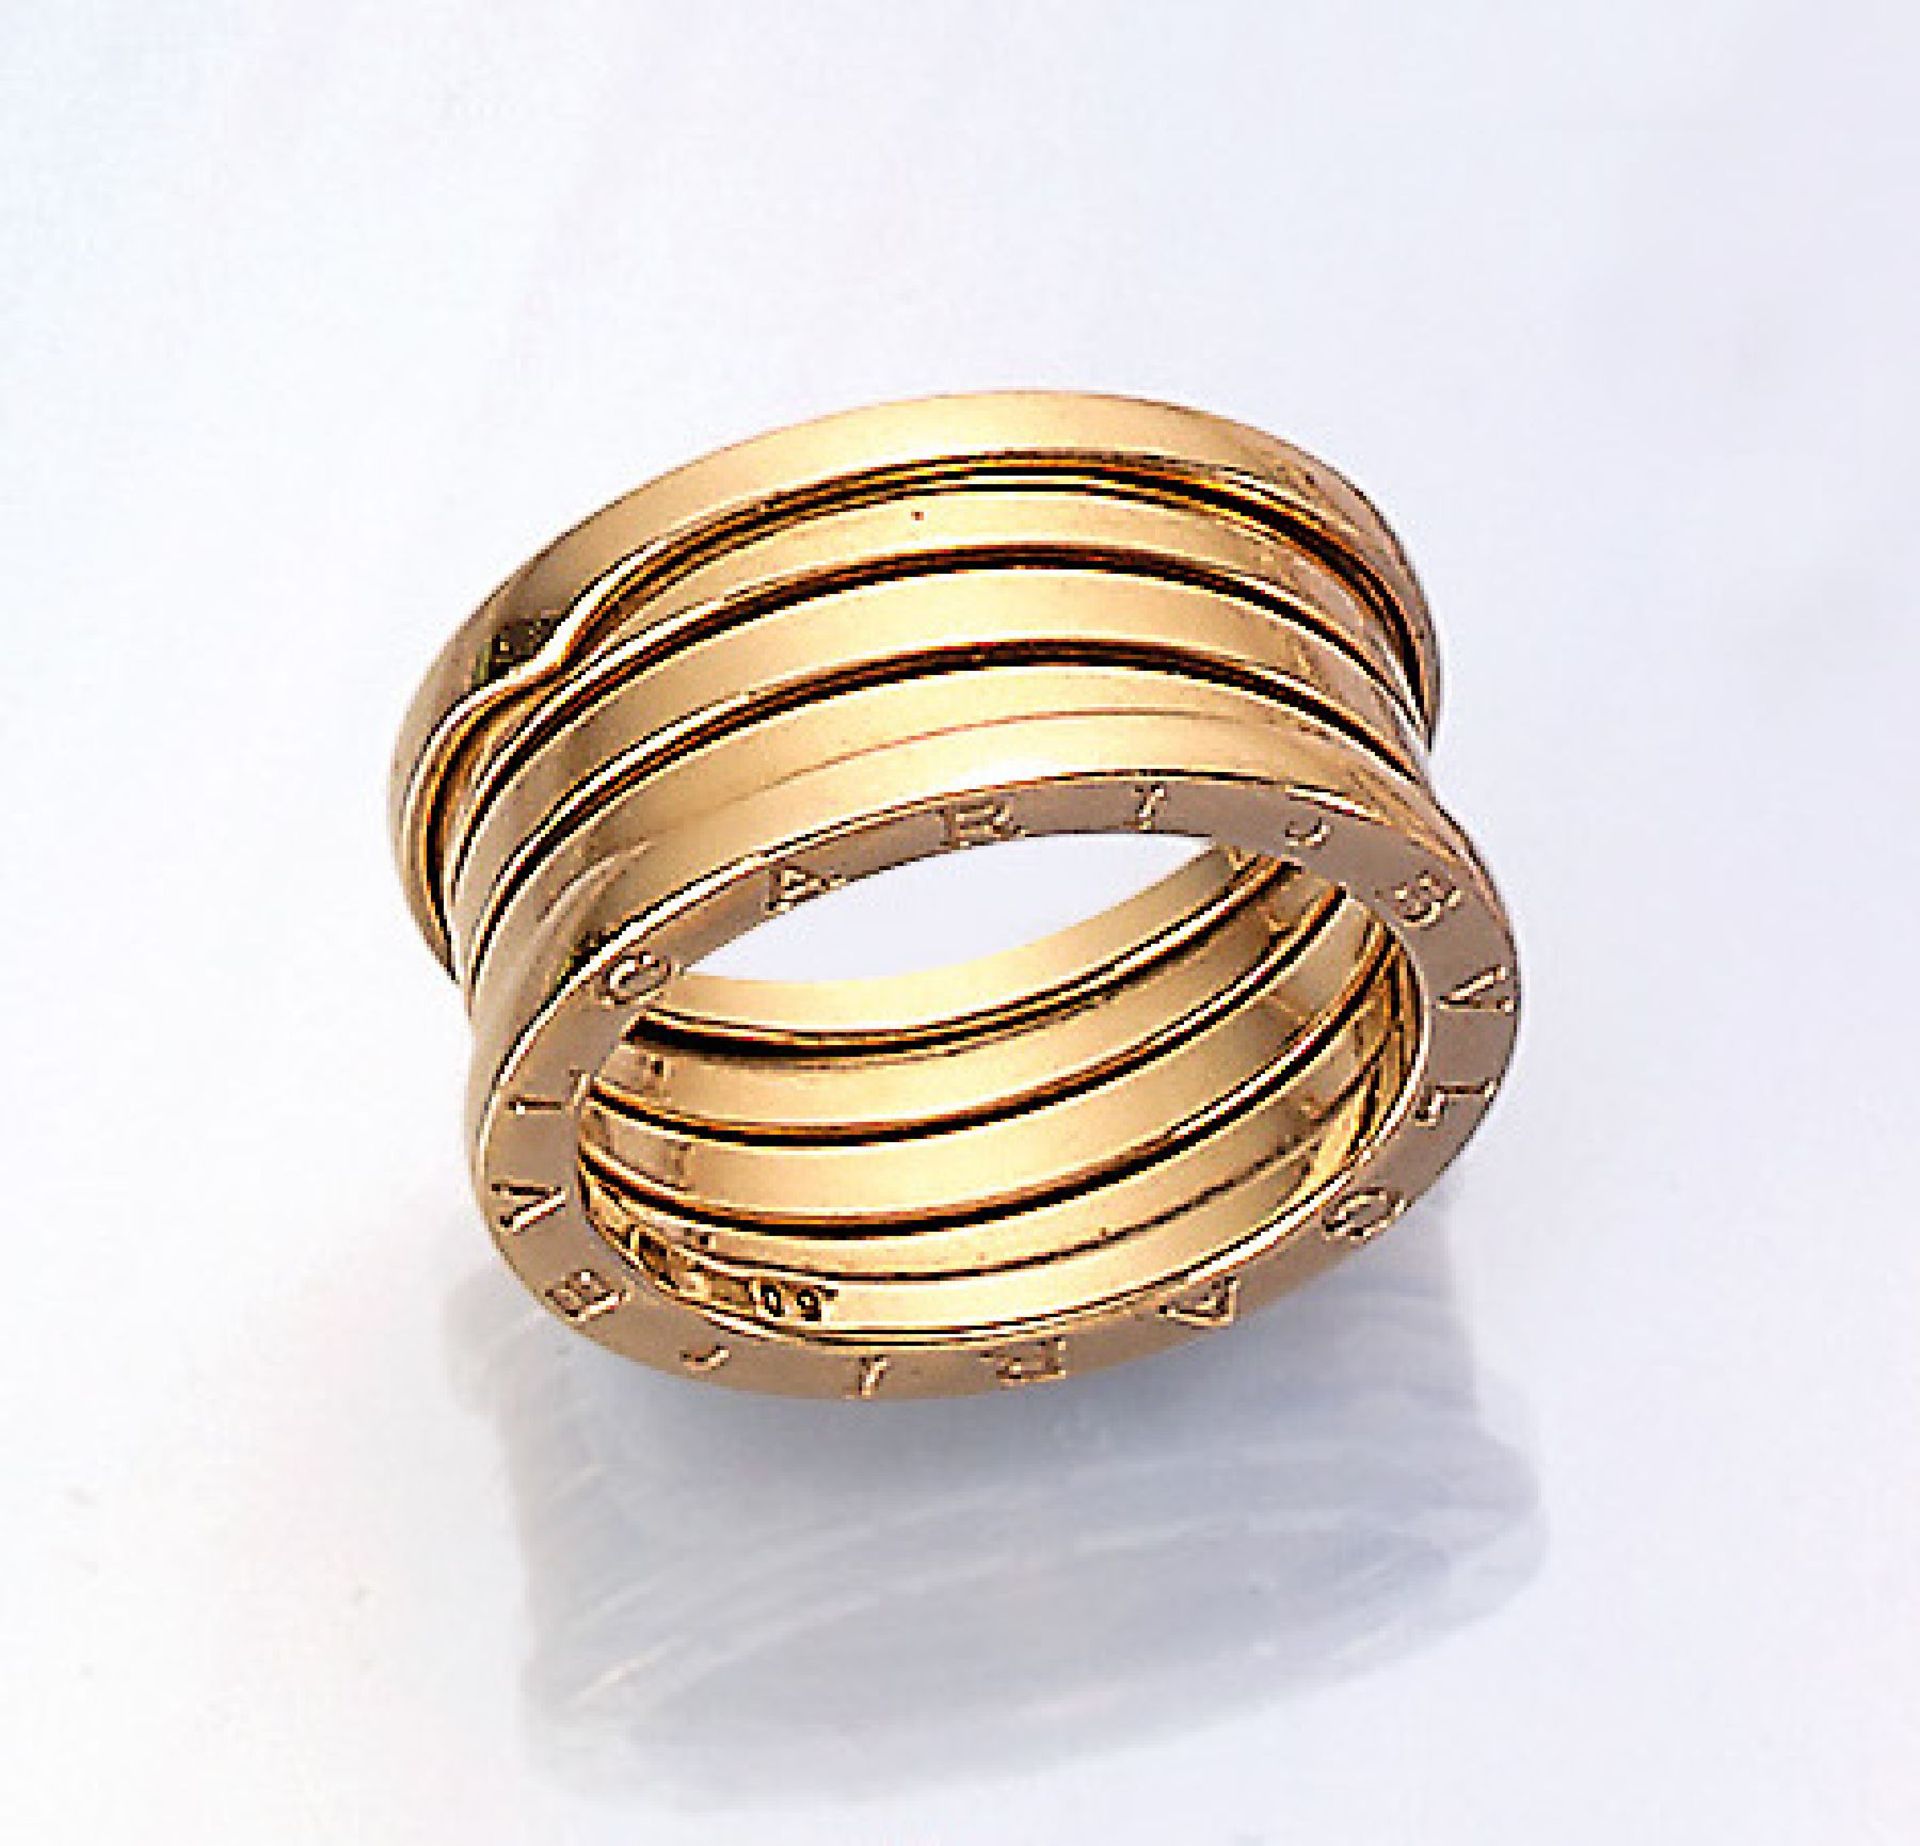 18 kt Gold BULGARI Ring "B Zero 1", GG 750/000, ca. 12.4 g, RW 60